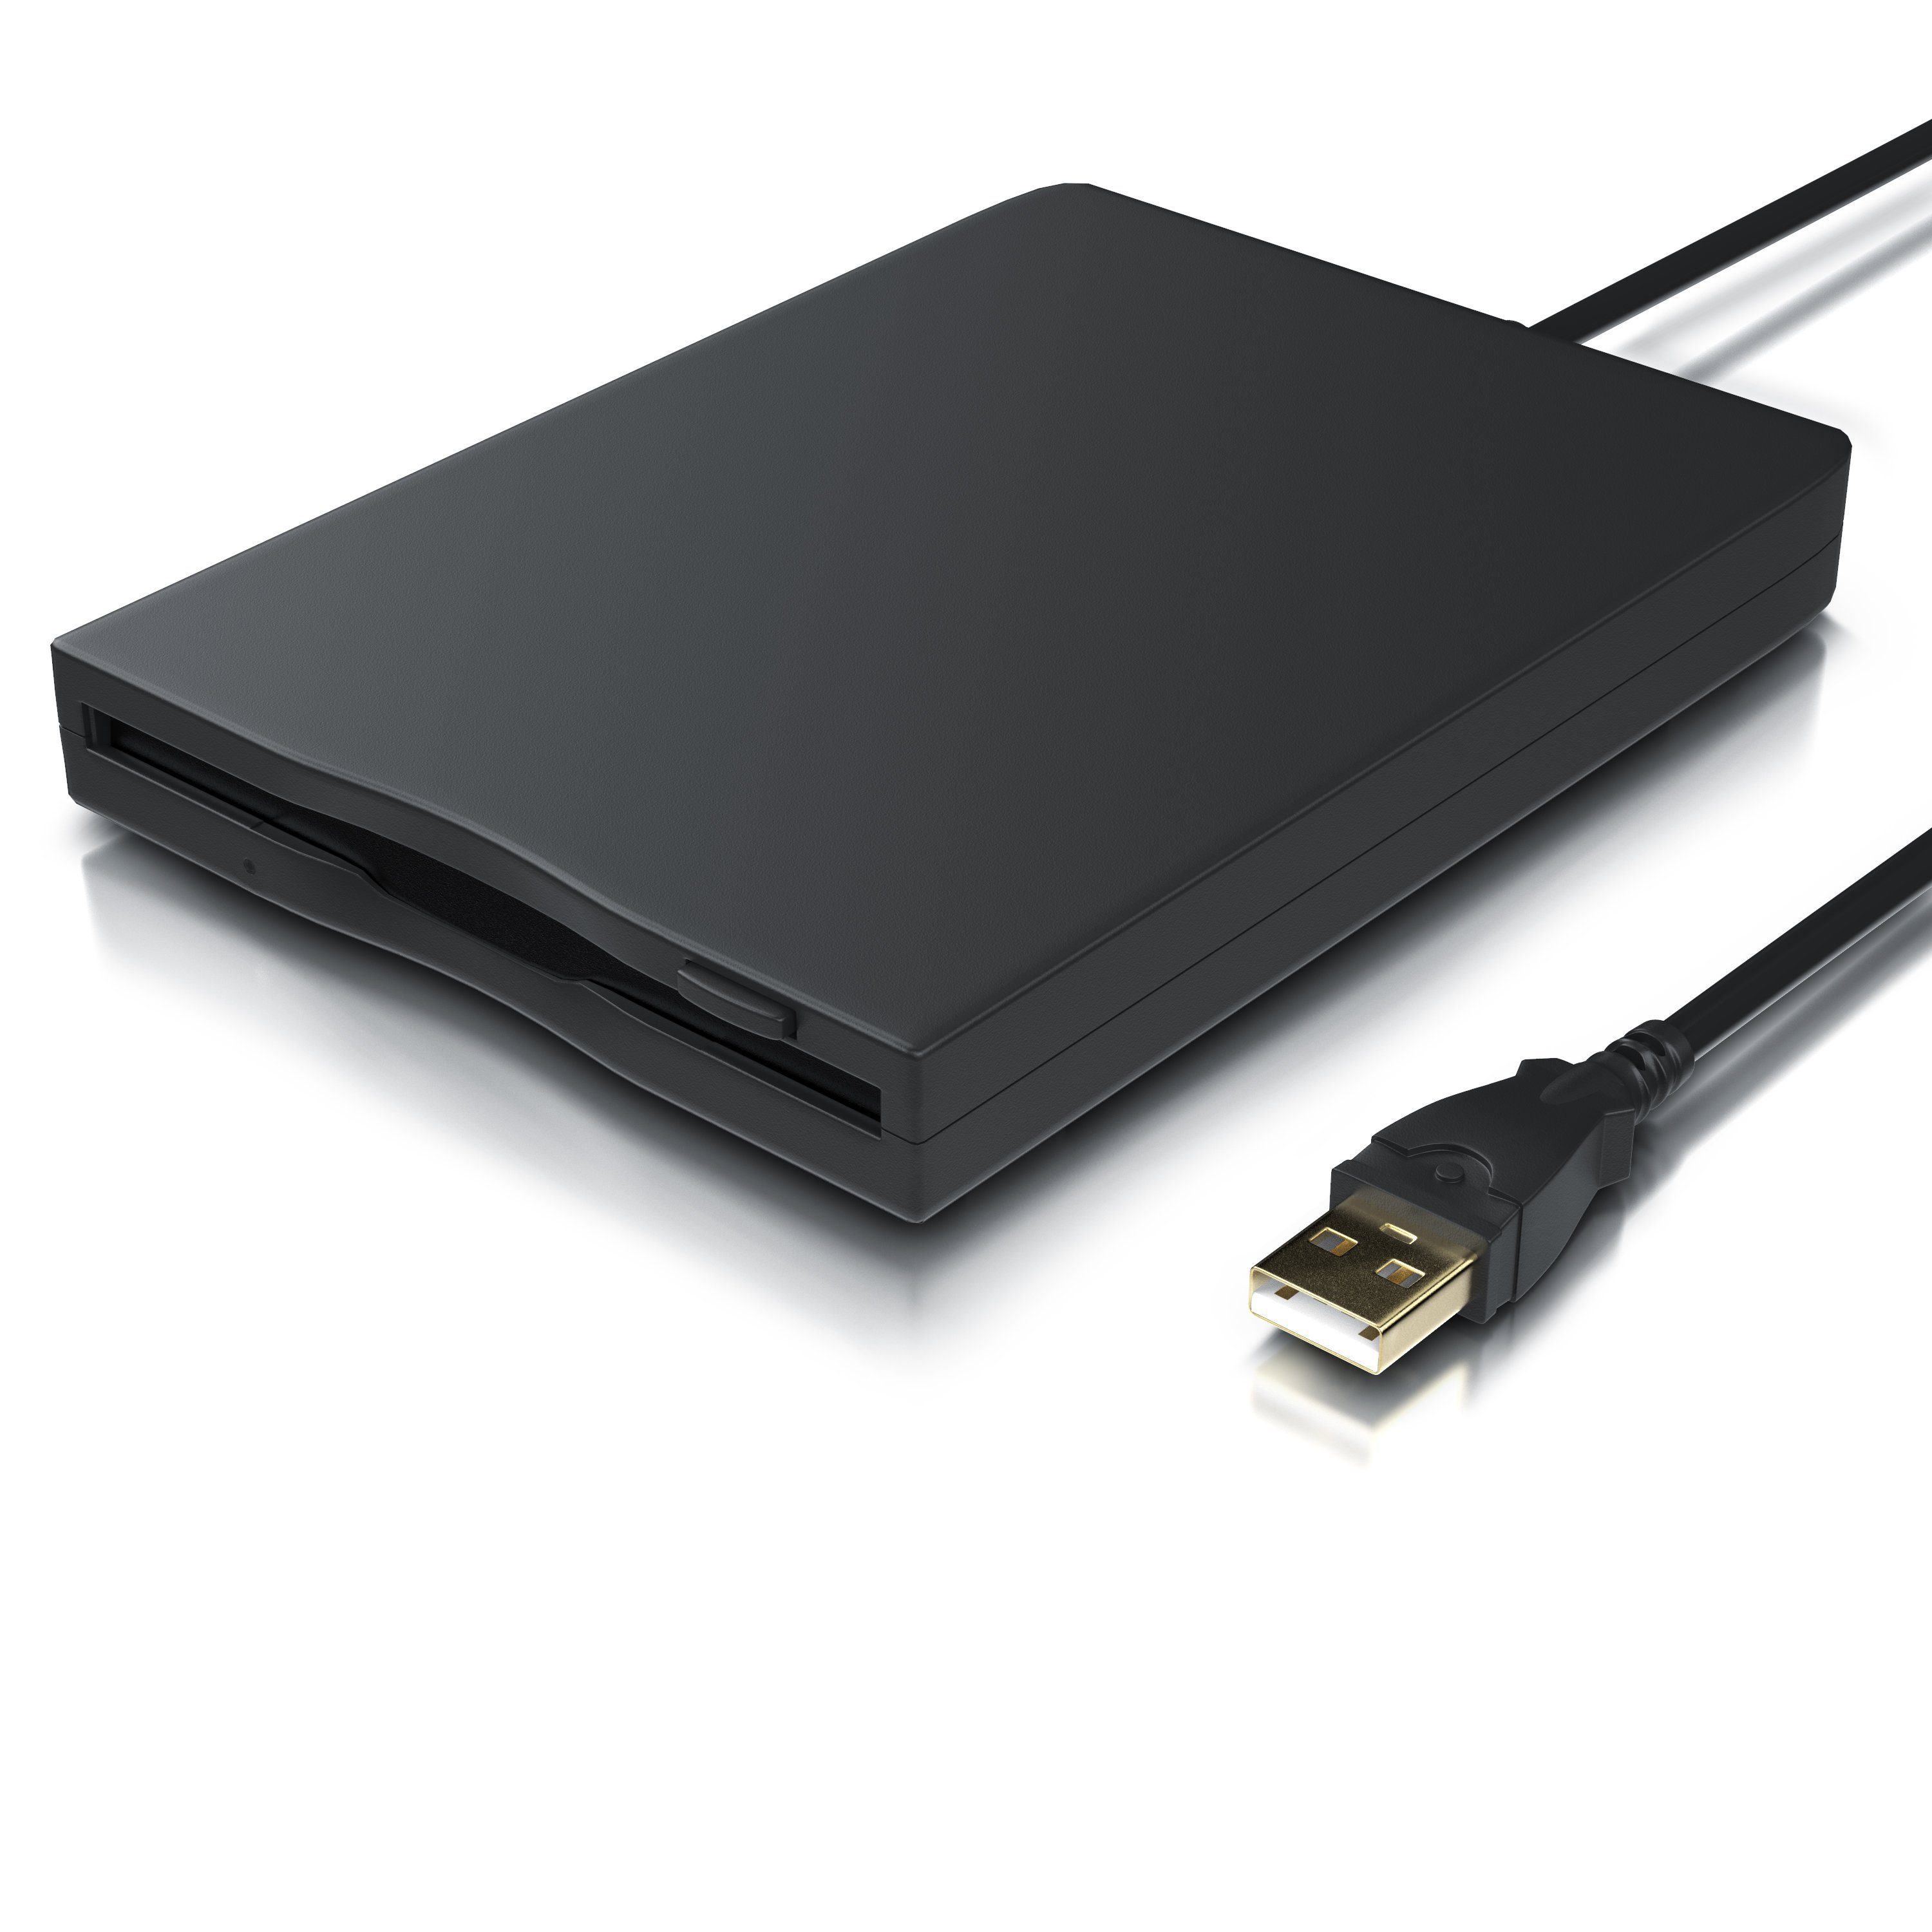 CSL Diskettenlaufwerk (USB 1.1, Externes USB Diskettenlaufwerk FDD 1,44MB  (3,5) geeignet für PC & MAC) online kaufen | OTTO